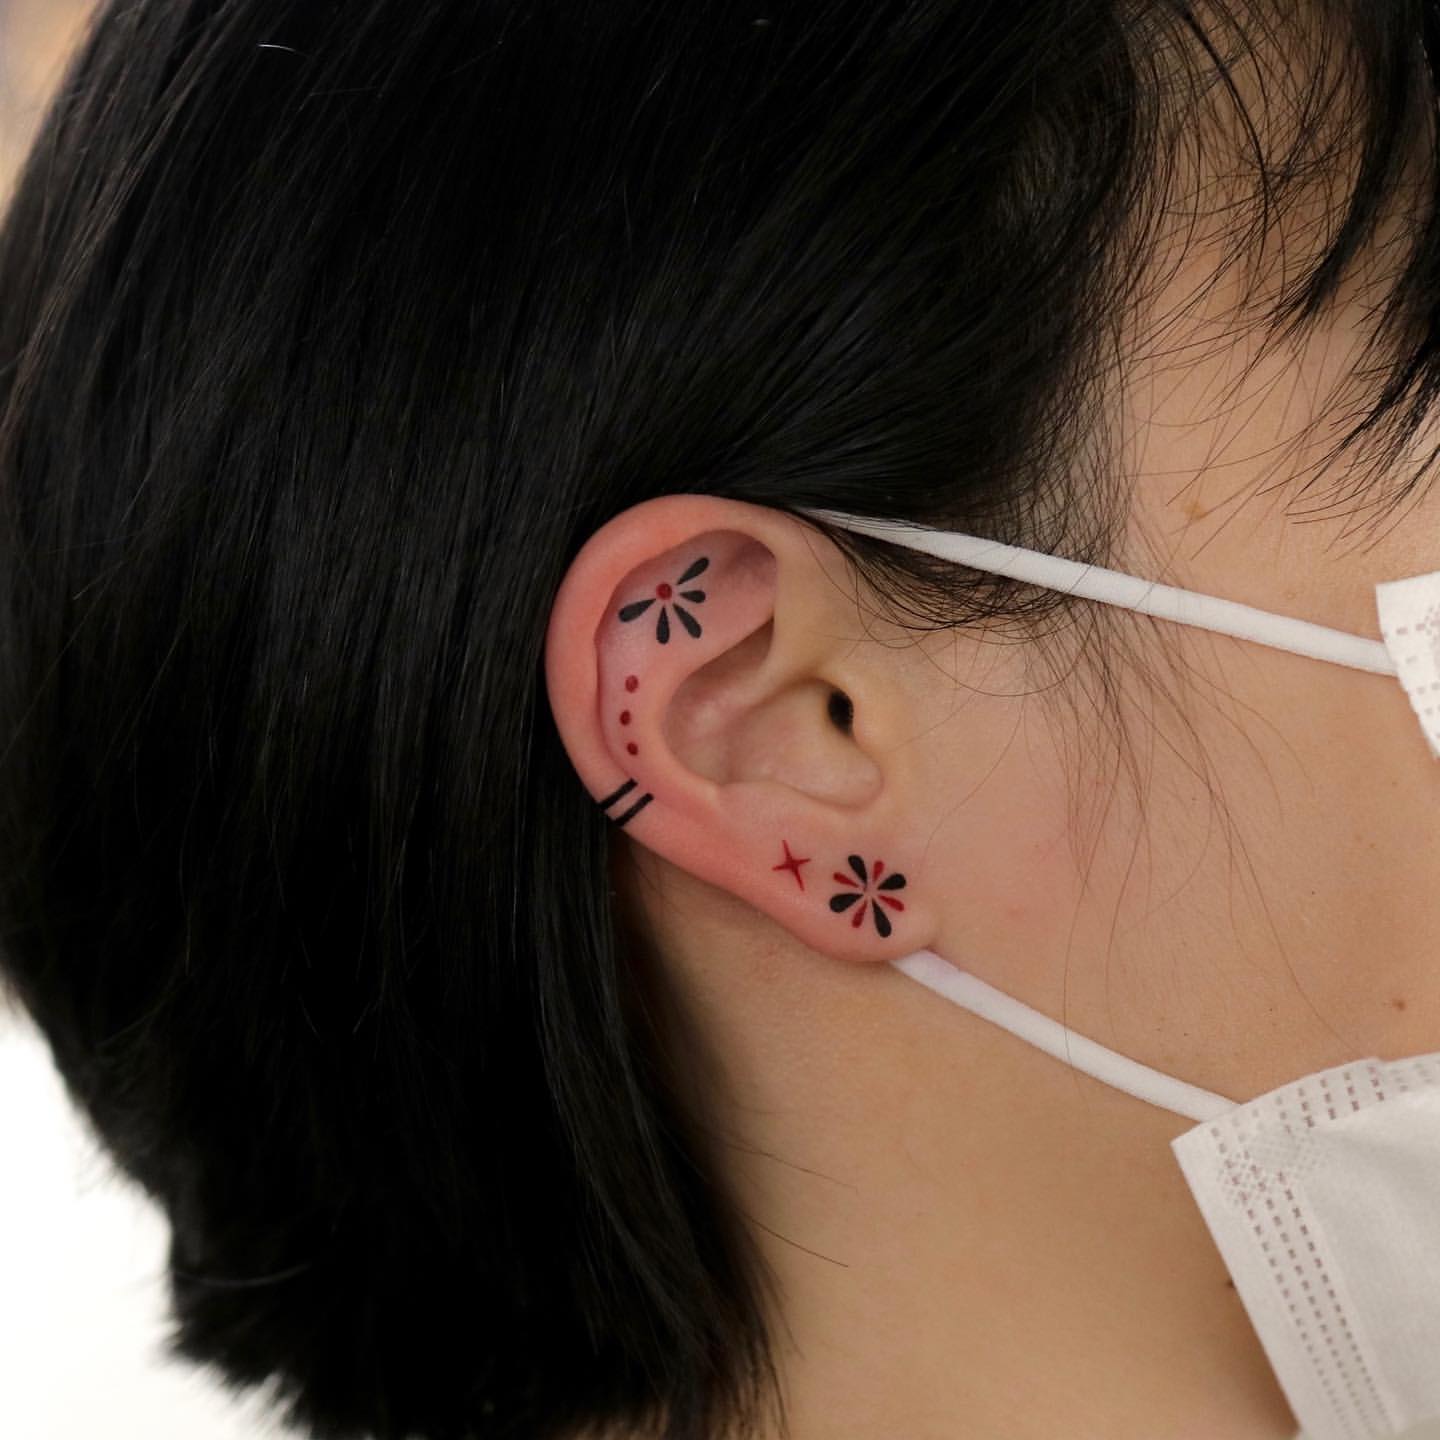 Ear Tattoo Ideas 2